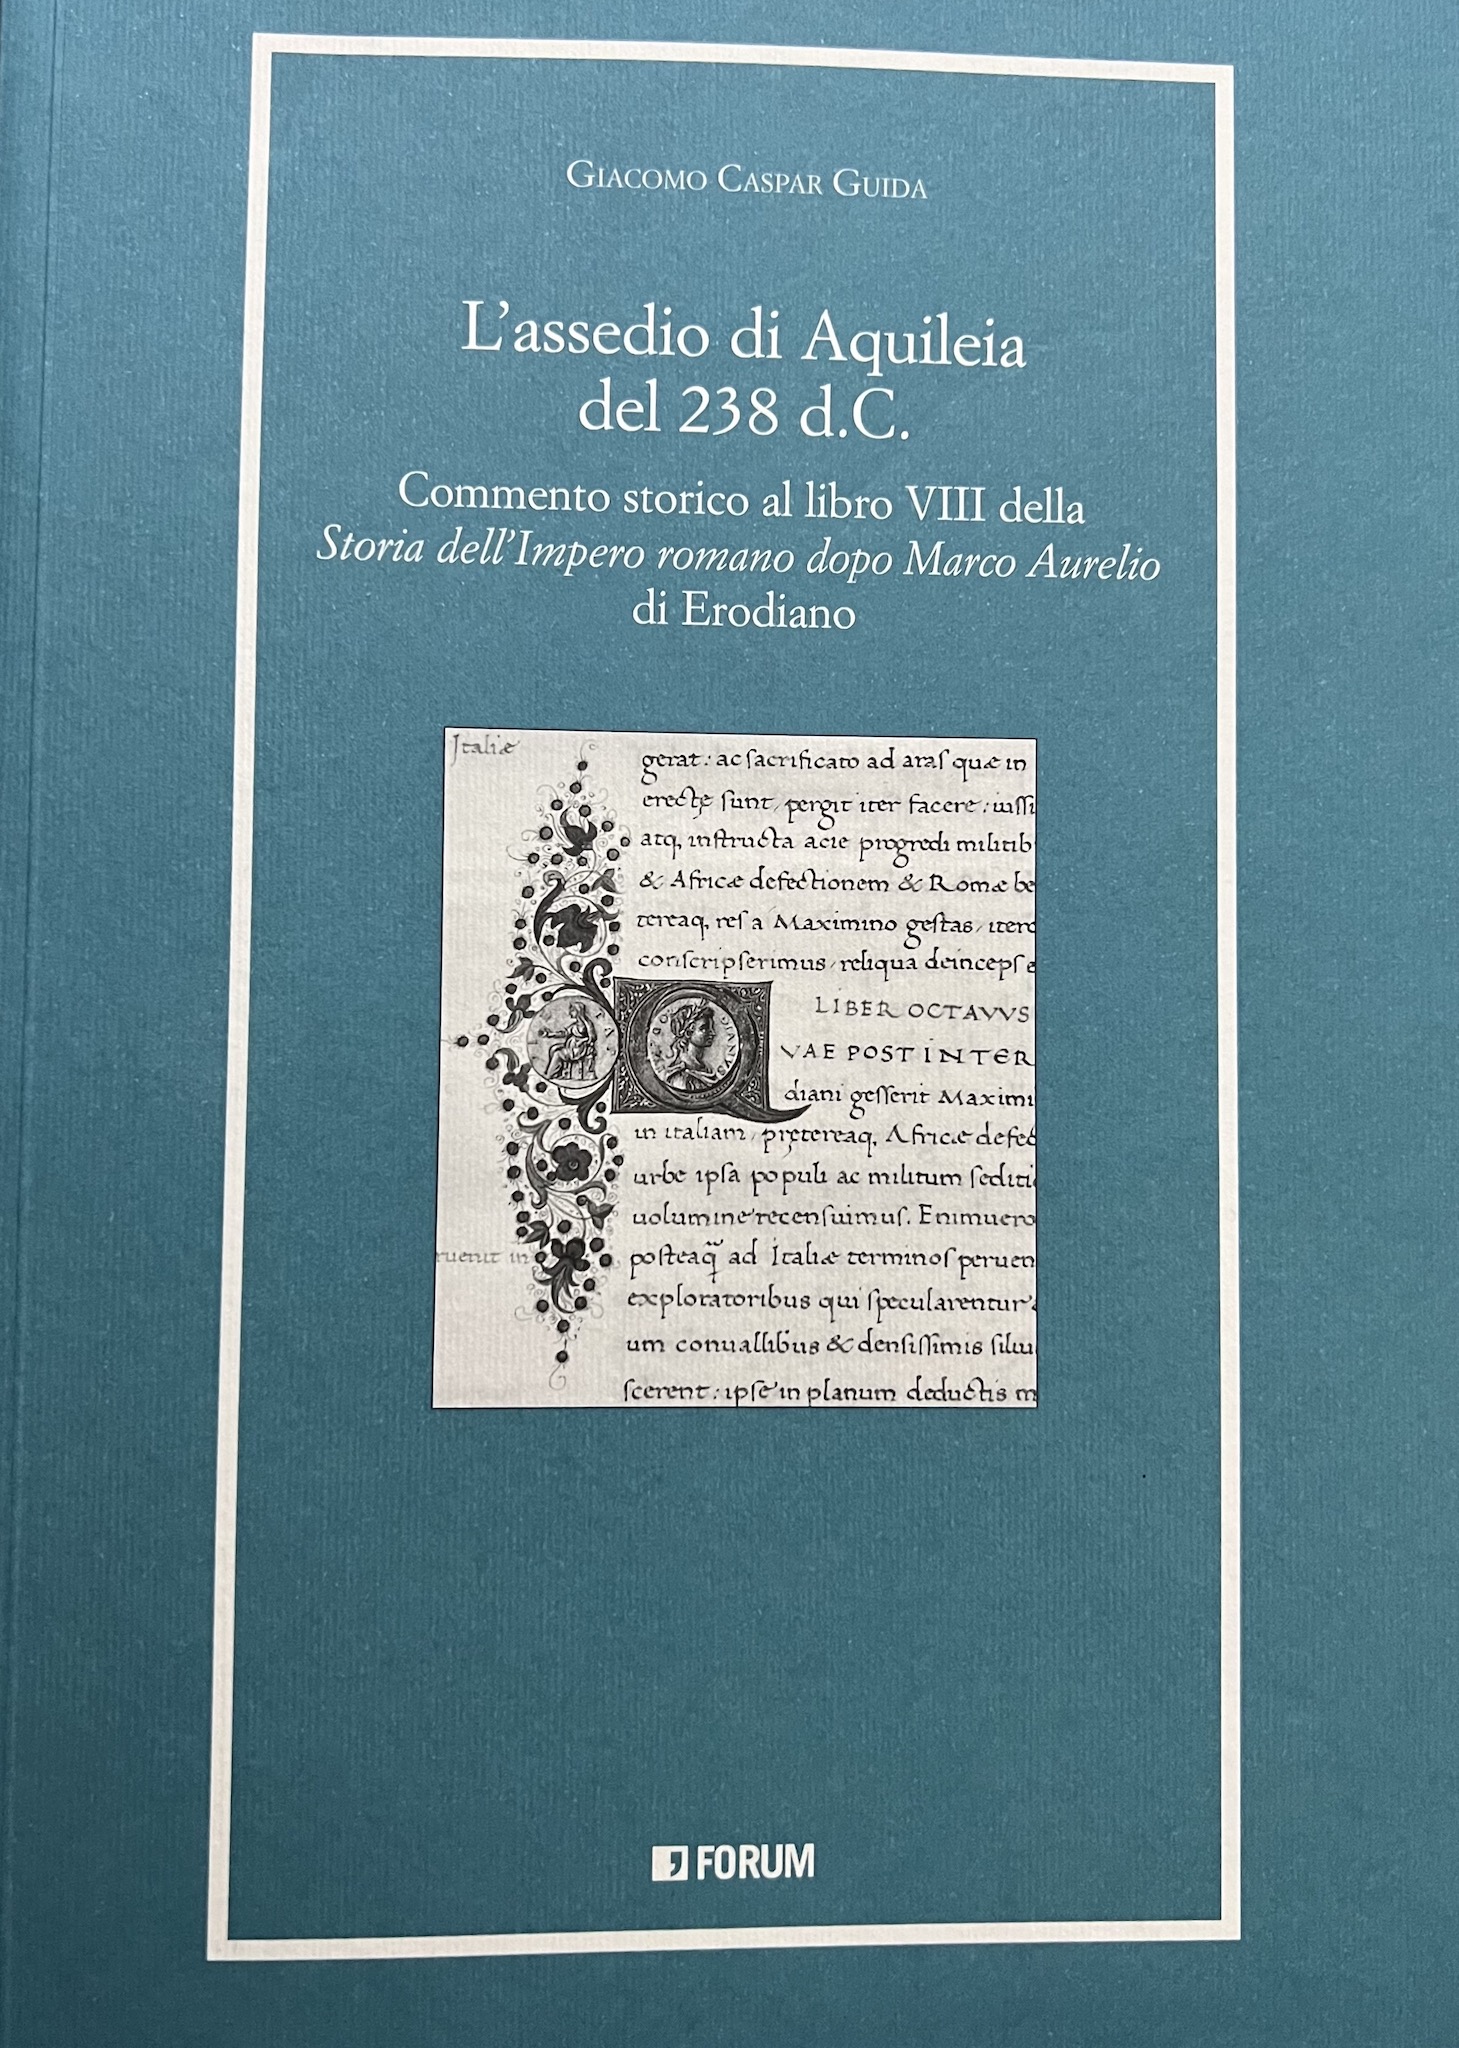 Recensione a Giacomo Caspar Guida, L’assedio di Aquileia del 238 d.C., Forum, 2022